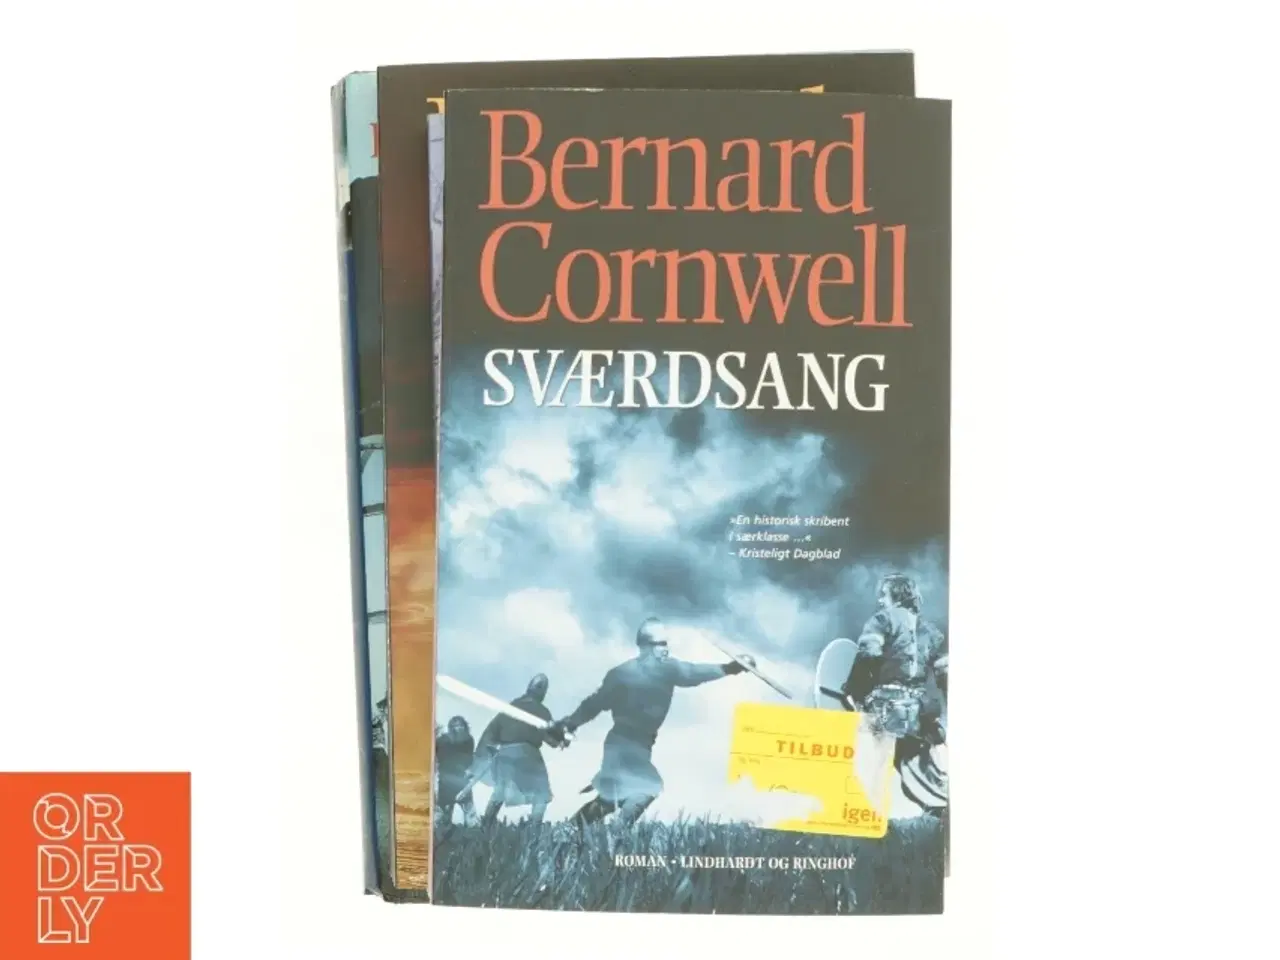 Billede 3 - Sværdsang af Bernard Cornwall (ialt 4 bøger)